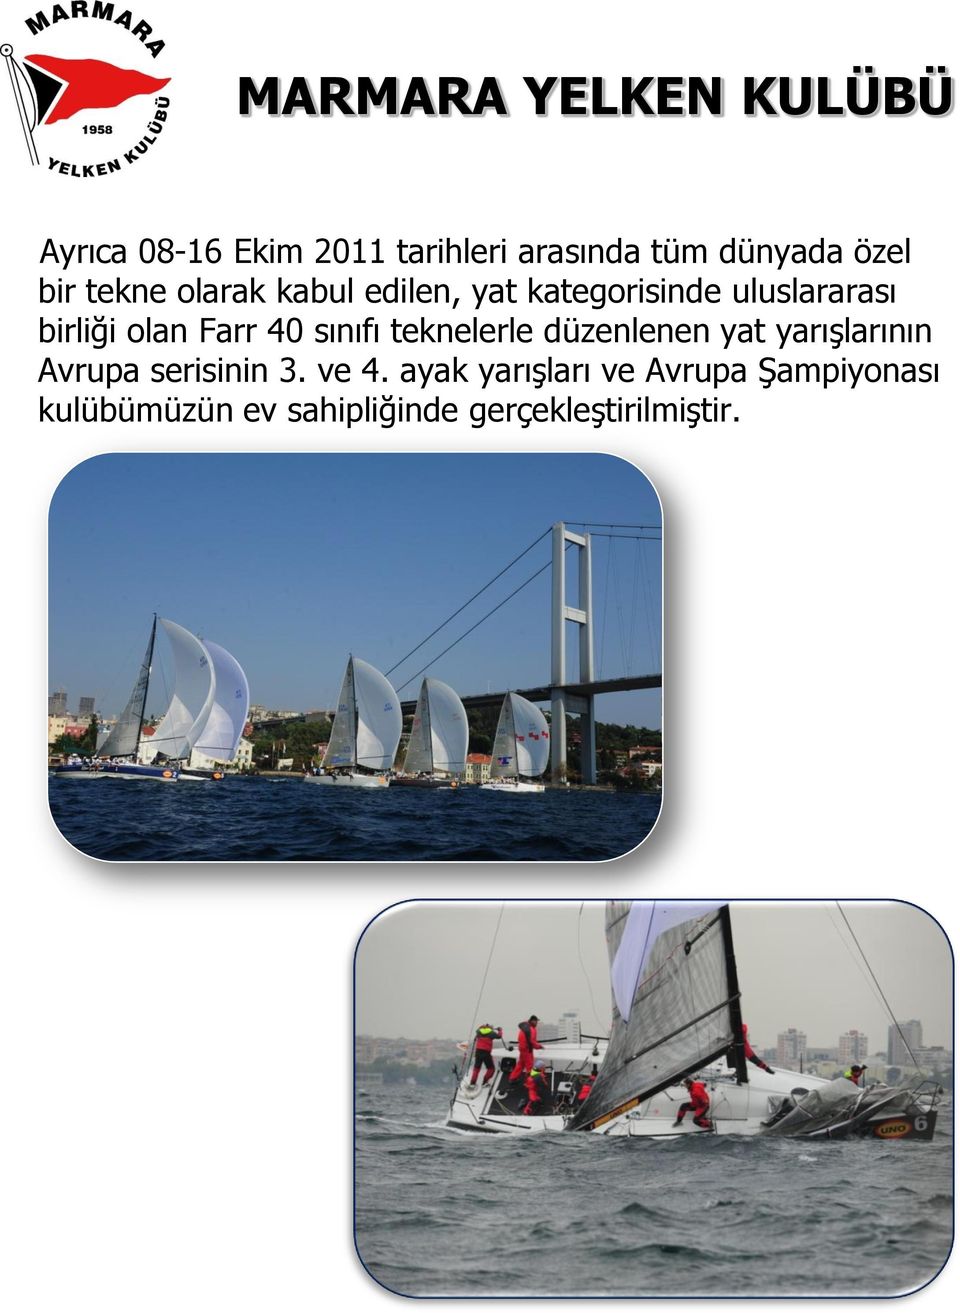 sınıfı teknelerle düzenlenen yat yarışlarının Avrupa serisinin 3. ve 4.